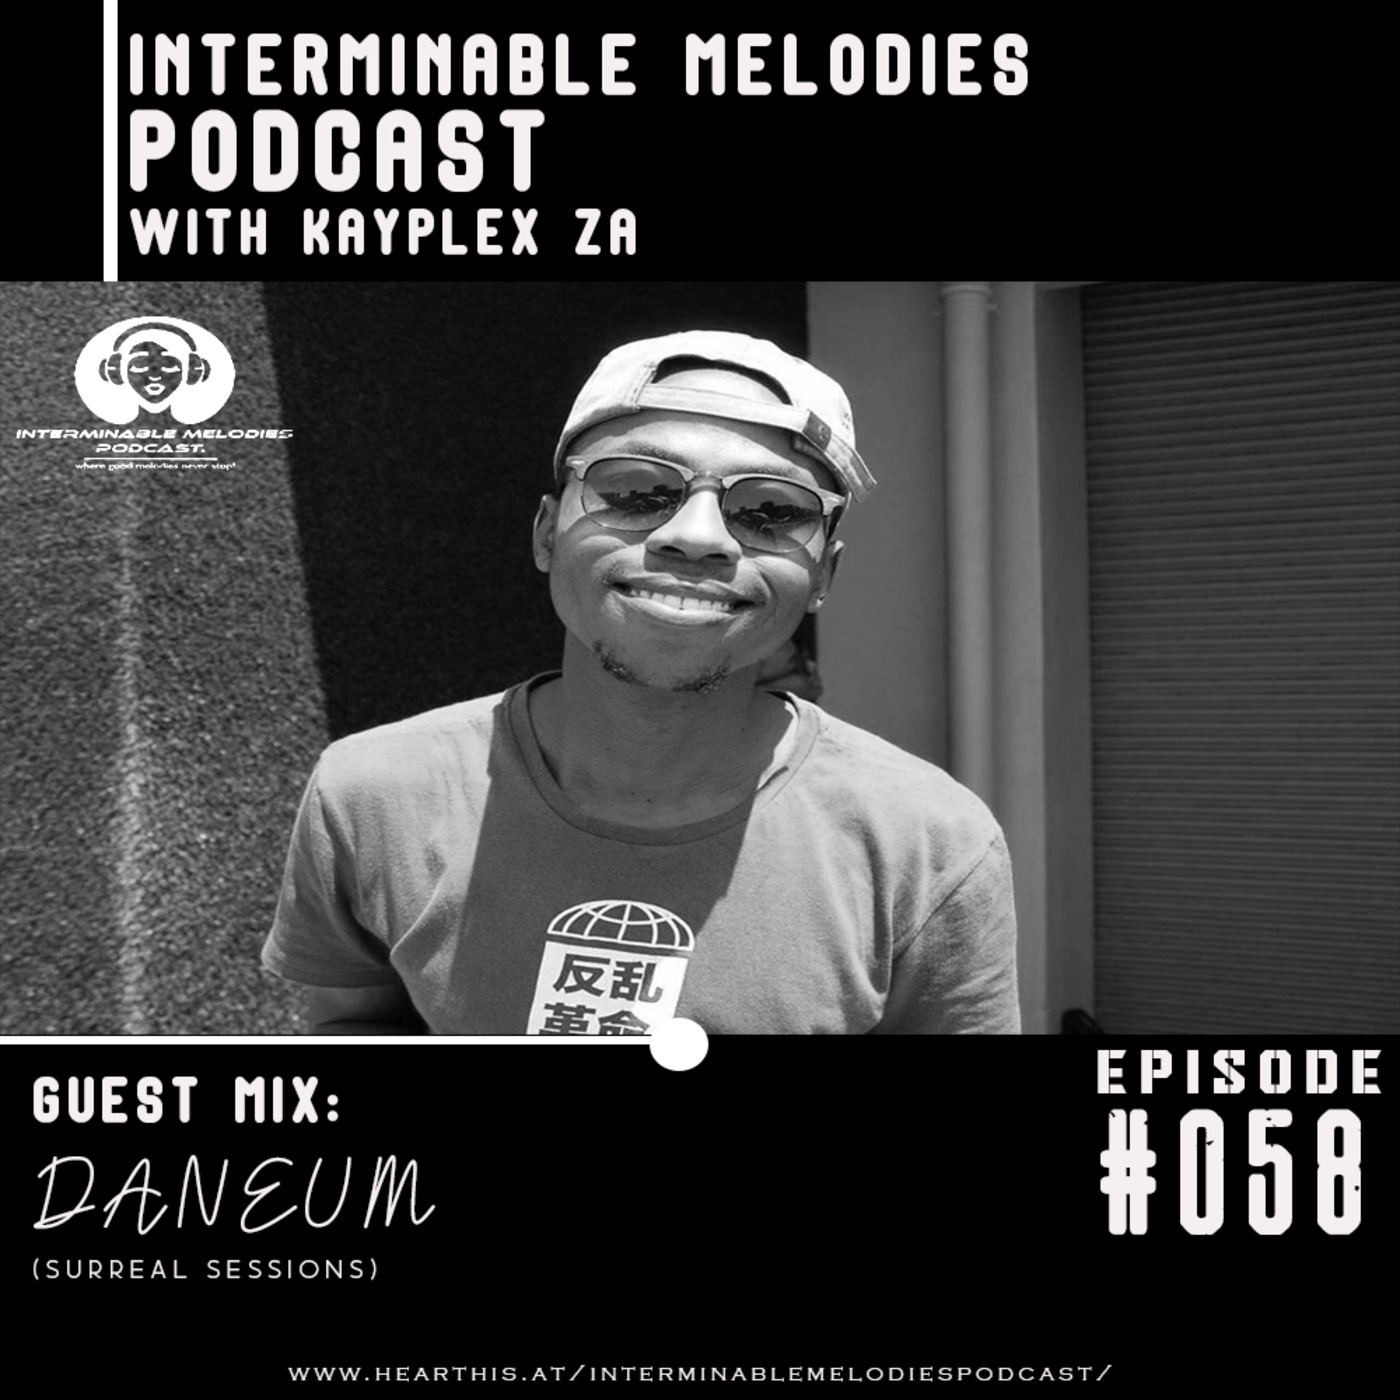 IMP - Episode #058 Guest Mix By Daneum